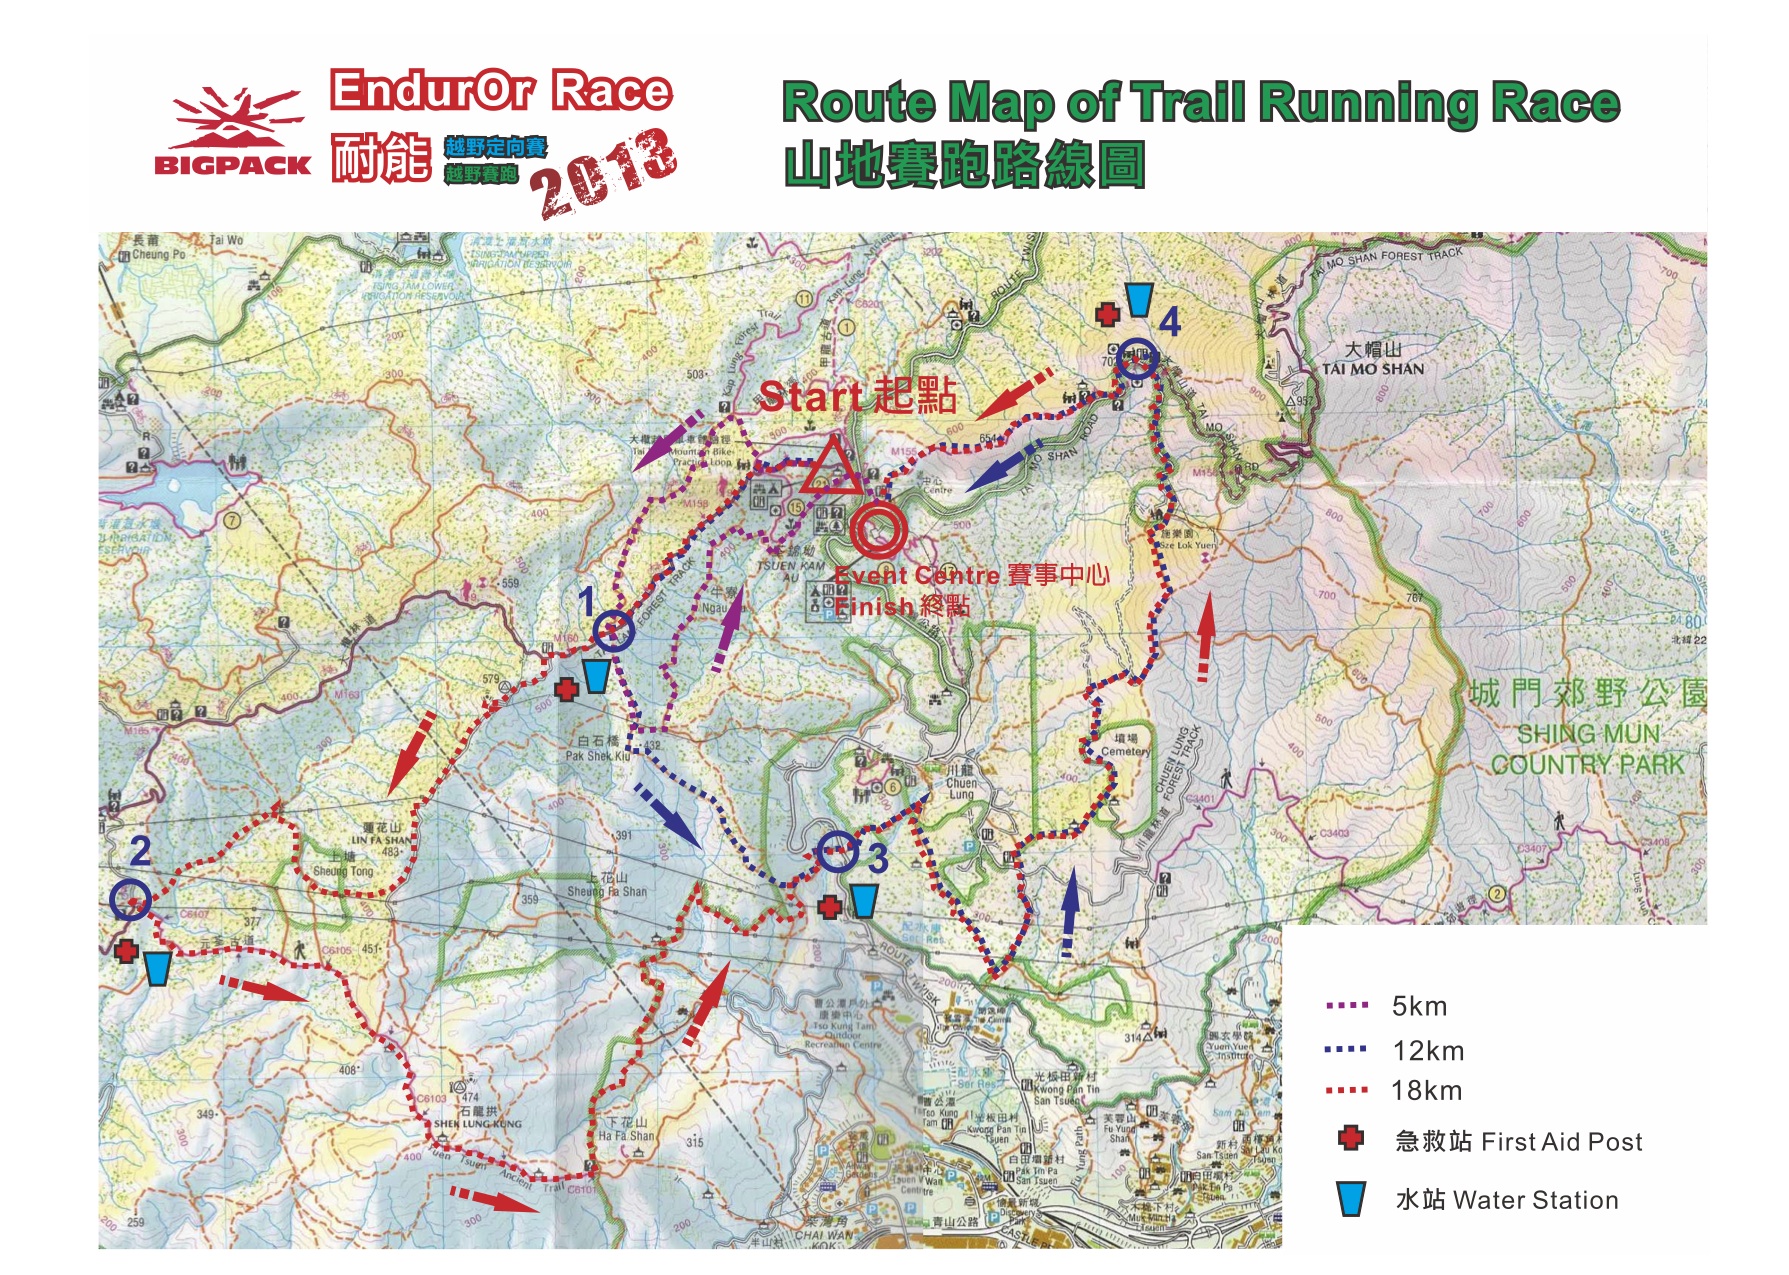 EndurOr Race 2013 - Trail Running Route Map.jpg